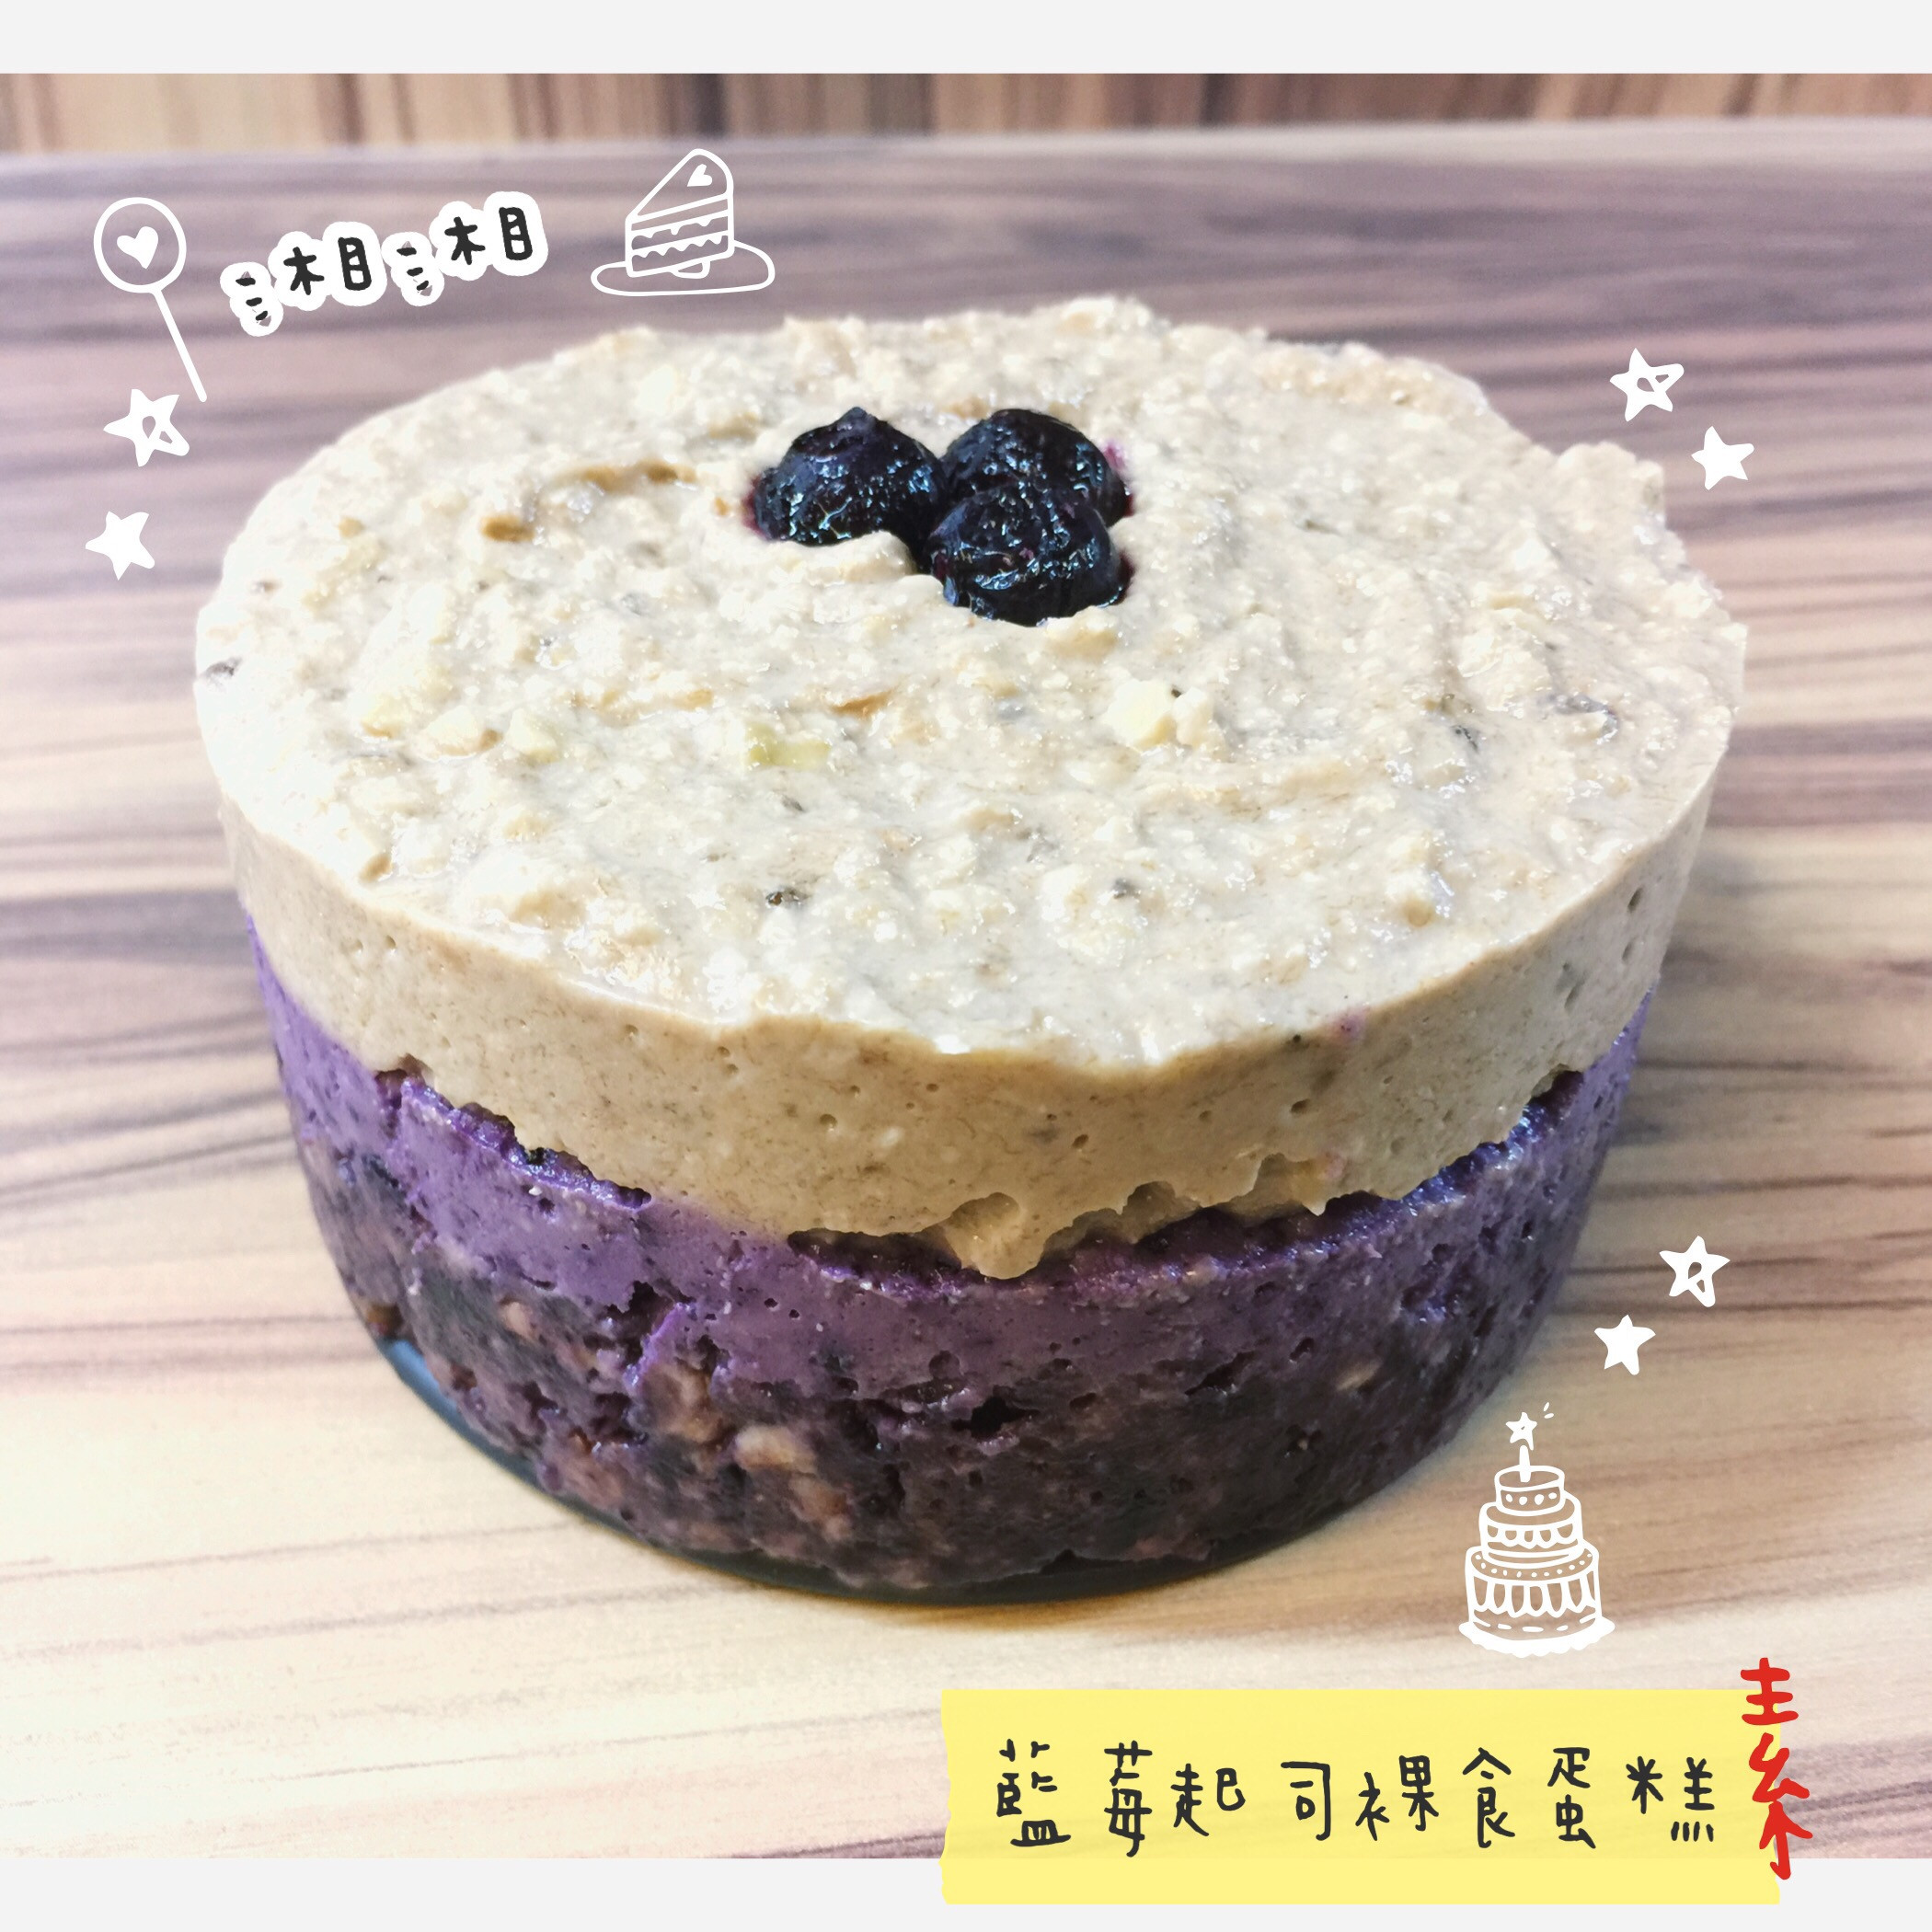 藍莓起司裸食蛋糕/免烘烤/素食